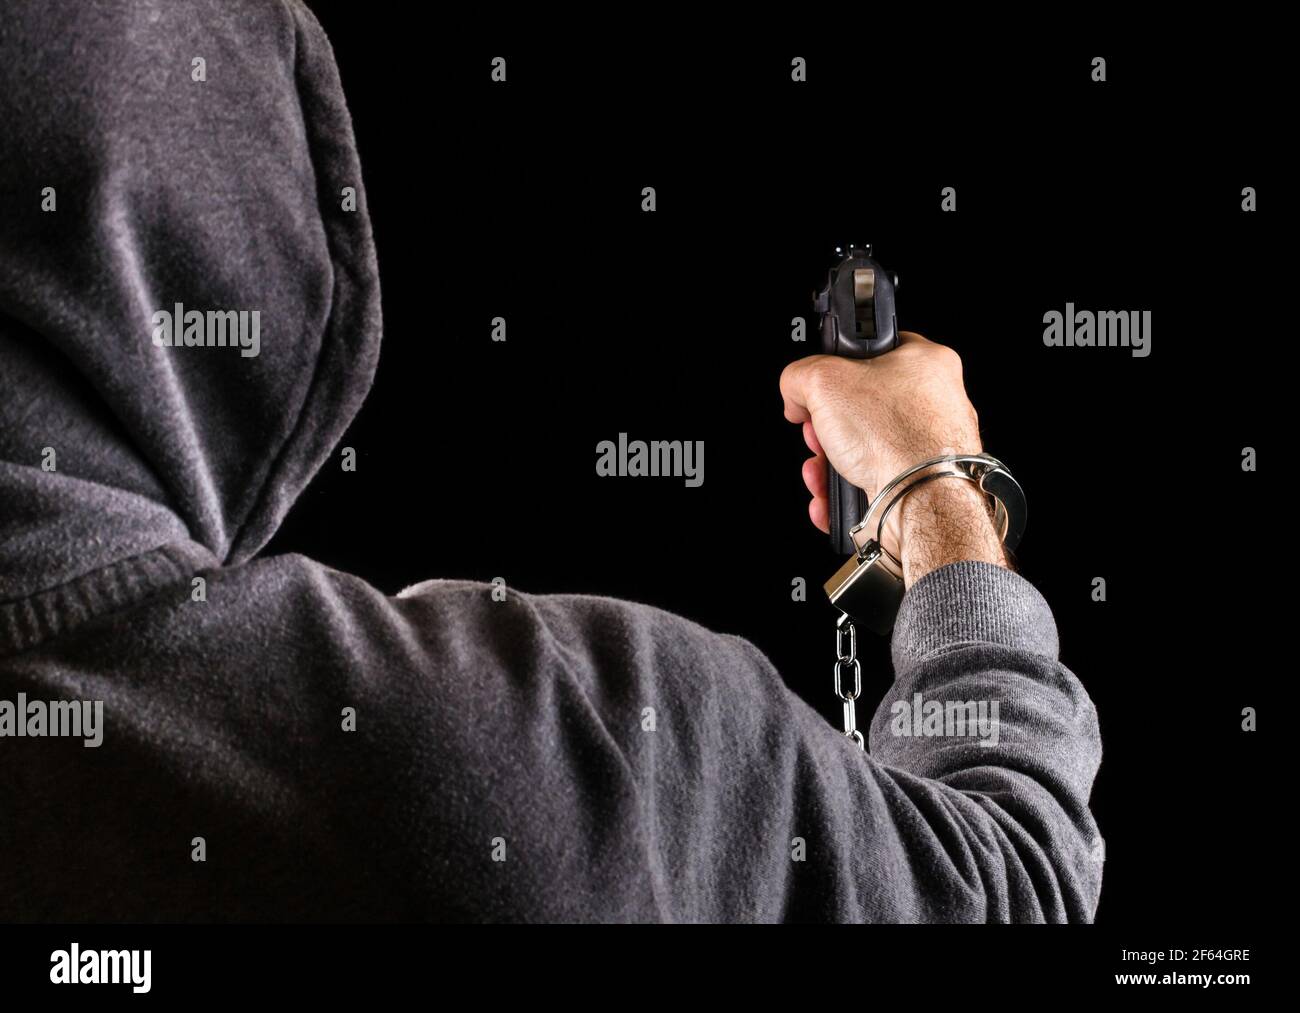 Dangerous prisoner fugitive with gun Stock Photo